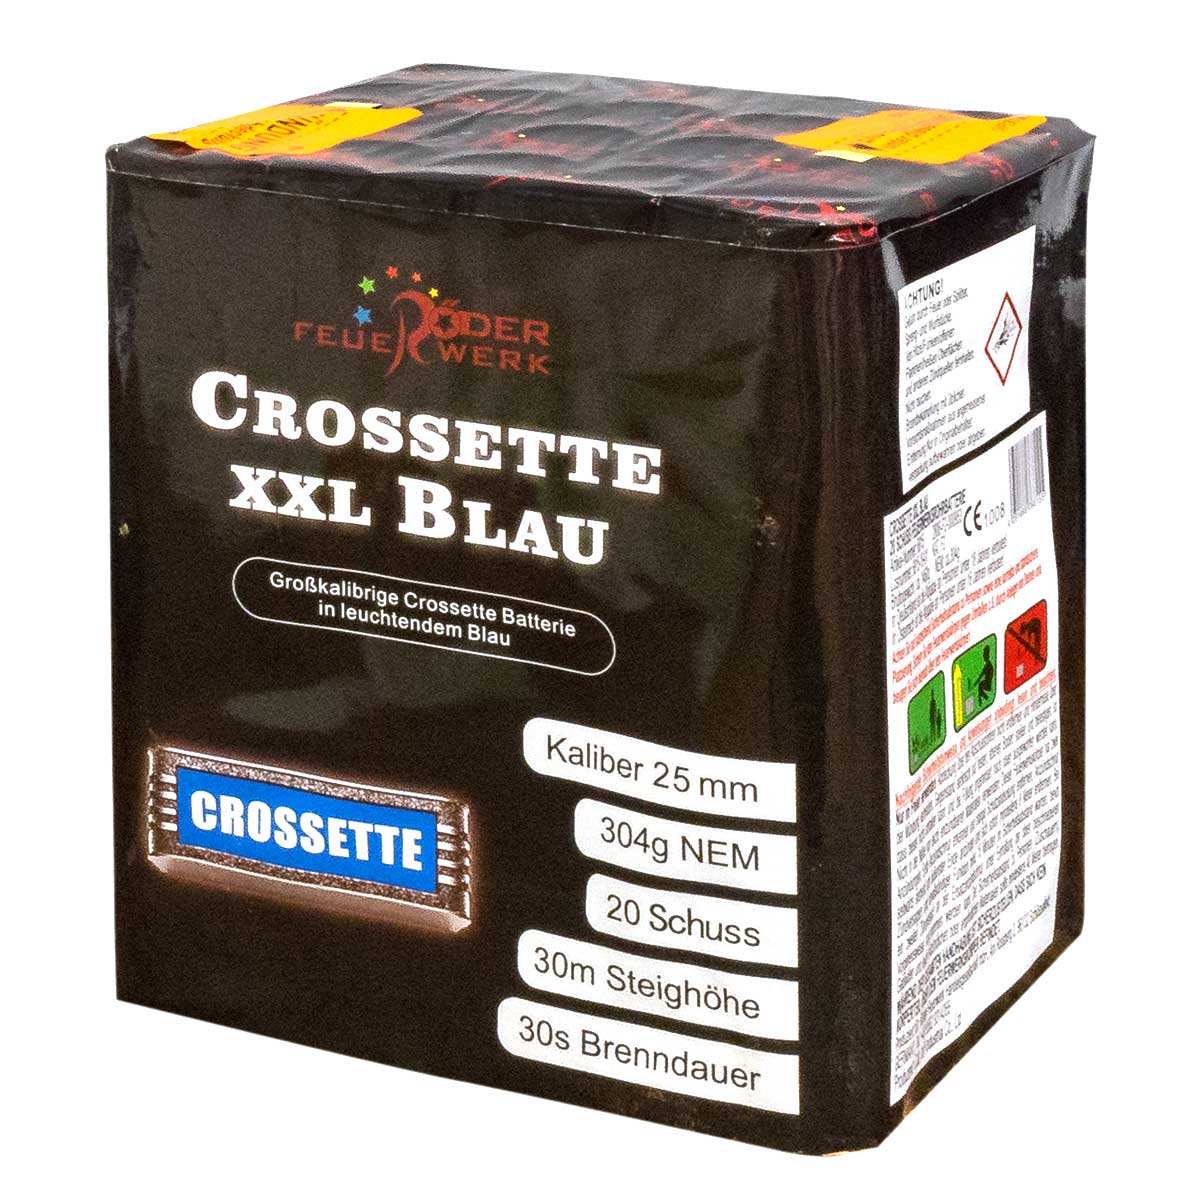 Crossette XXL Blau von Röder Feuerwerk, Batteriefeuerwerk